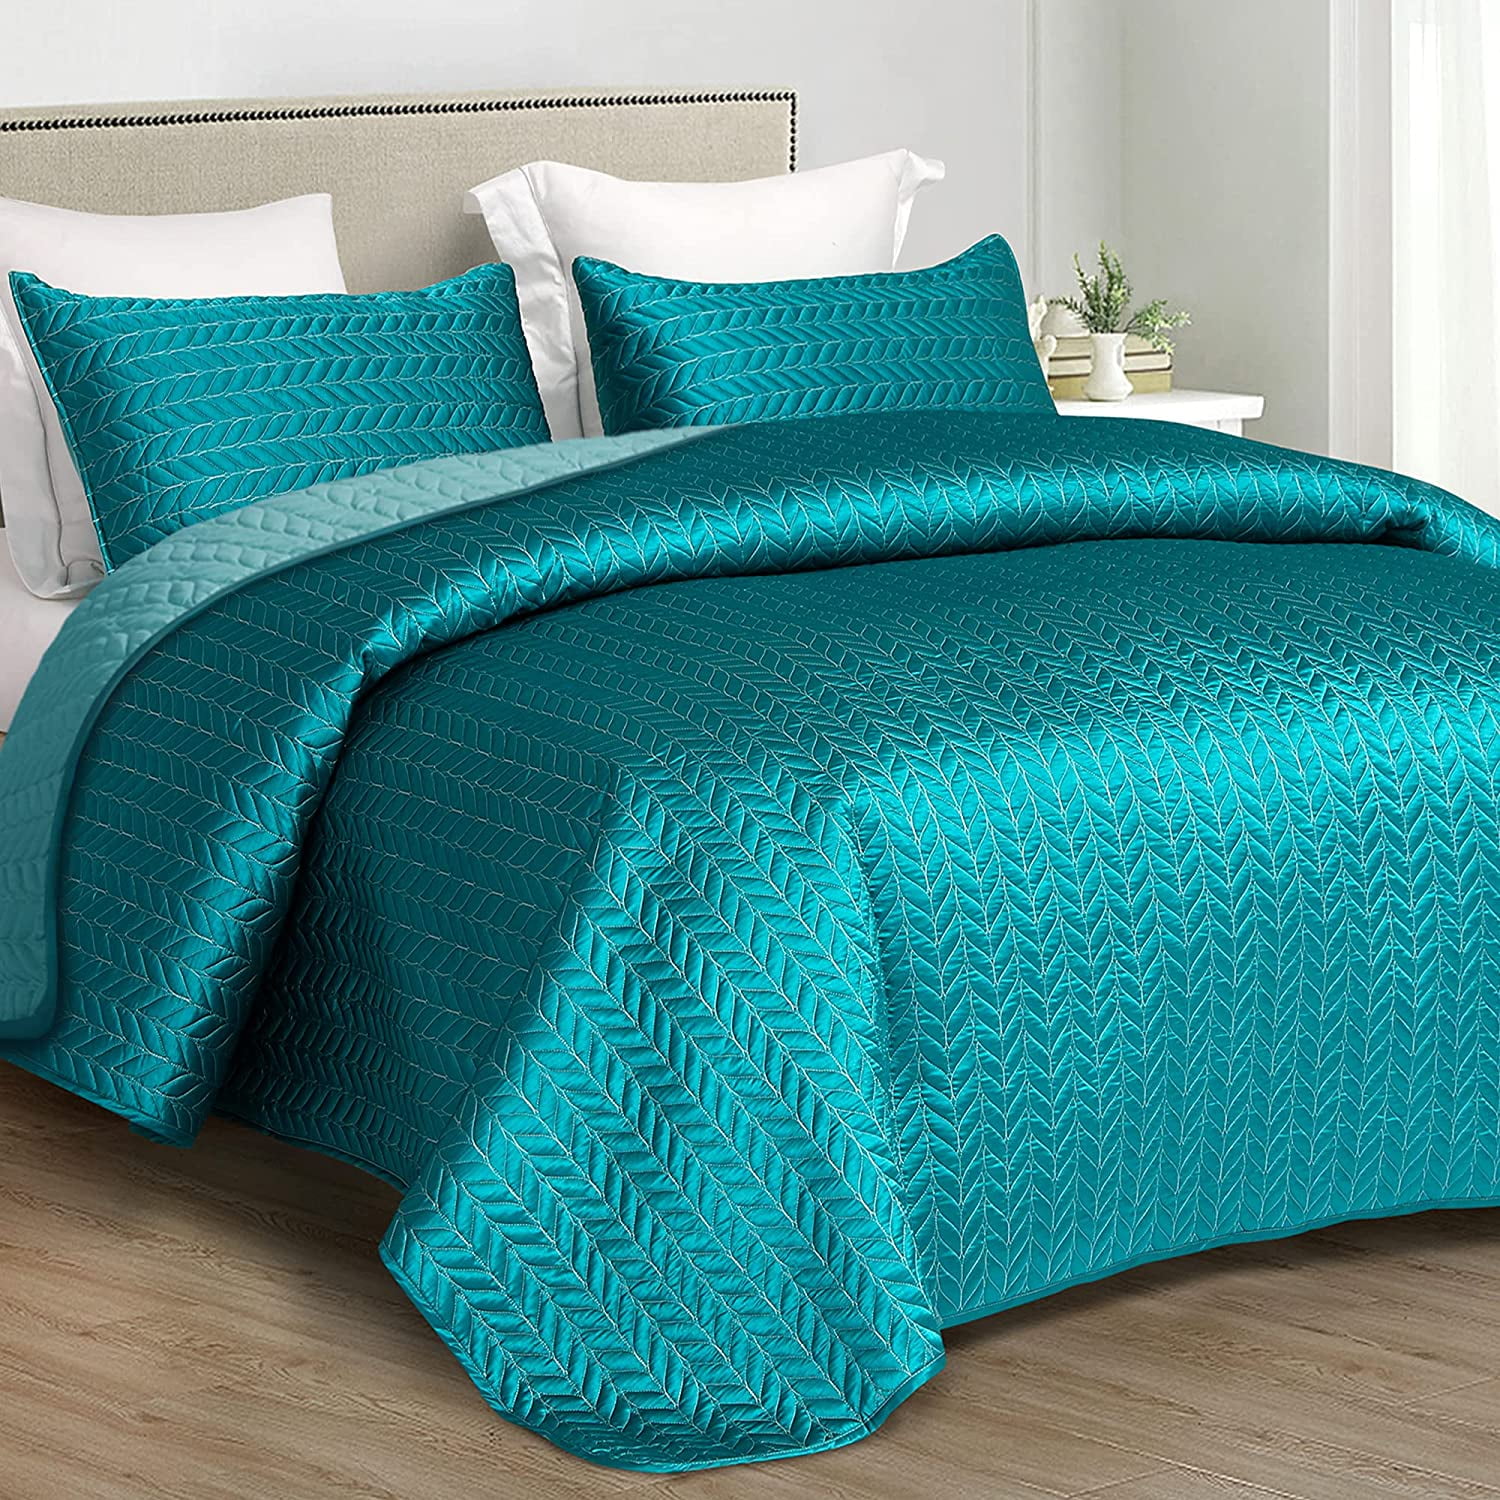 EWAYBY Queen Quilt Bedding Set 3-Piece Bedspread Coverlet Set